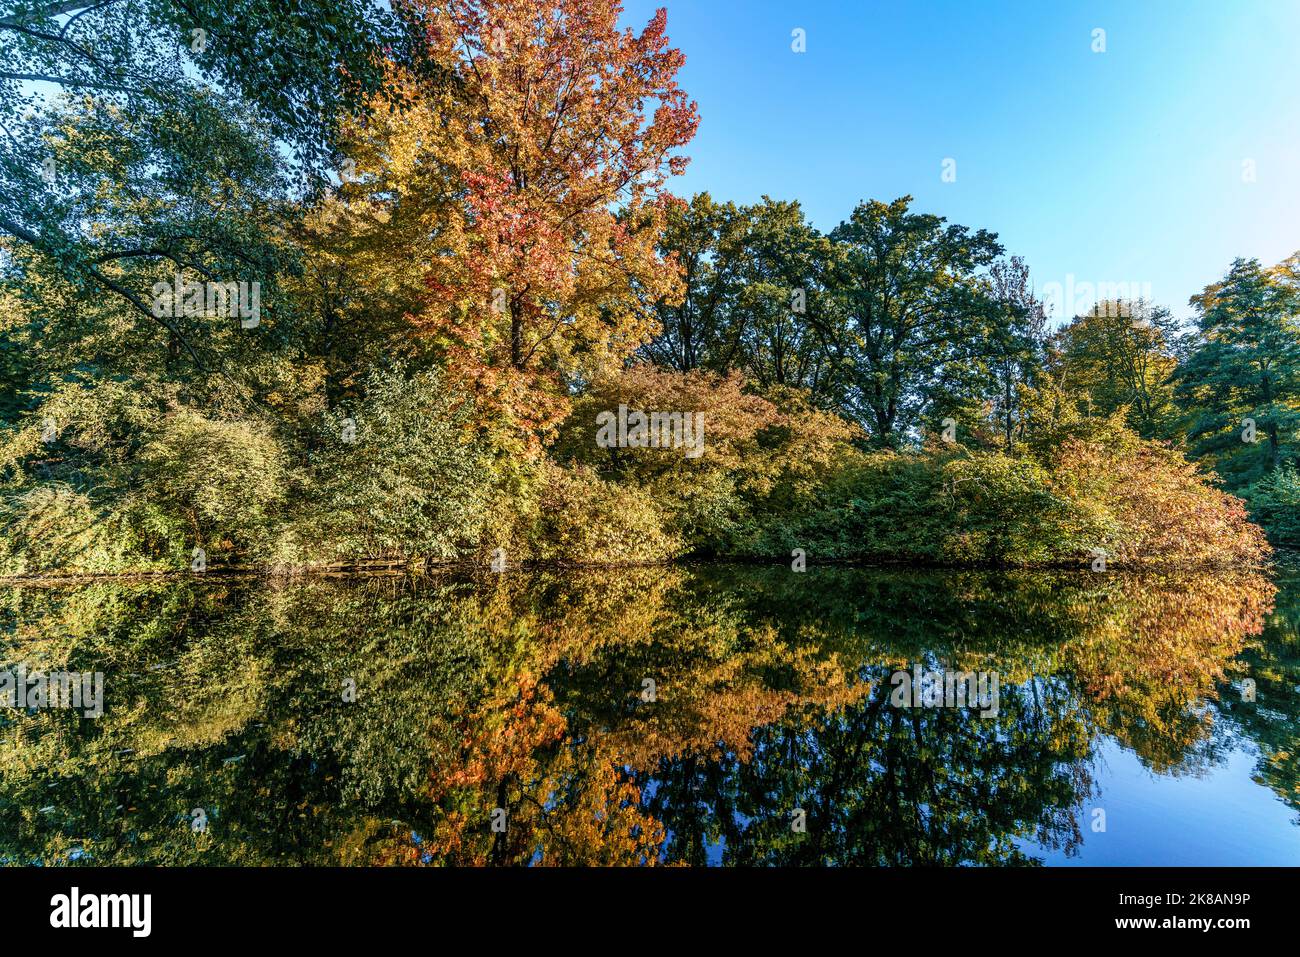 Tiergarten im Herbst, Herbstfarben, verfärbte Blätter, Berlin, Deutschland Stock Photo